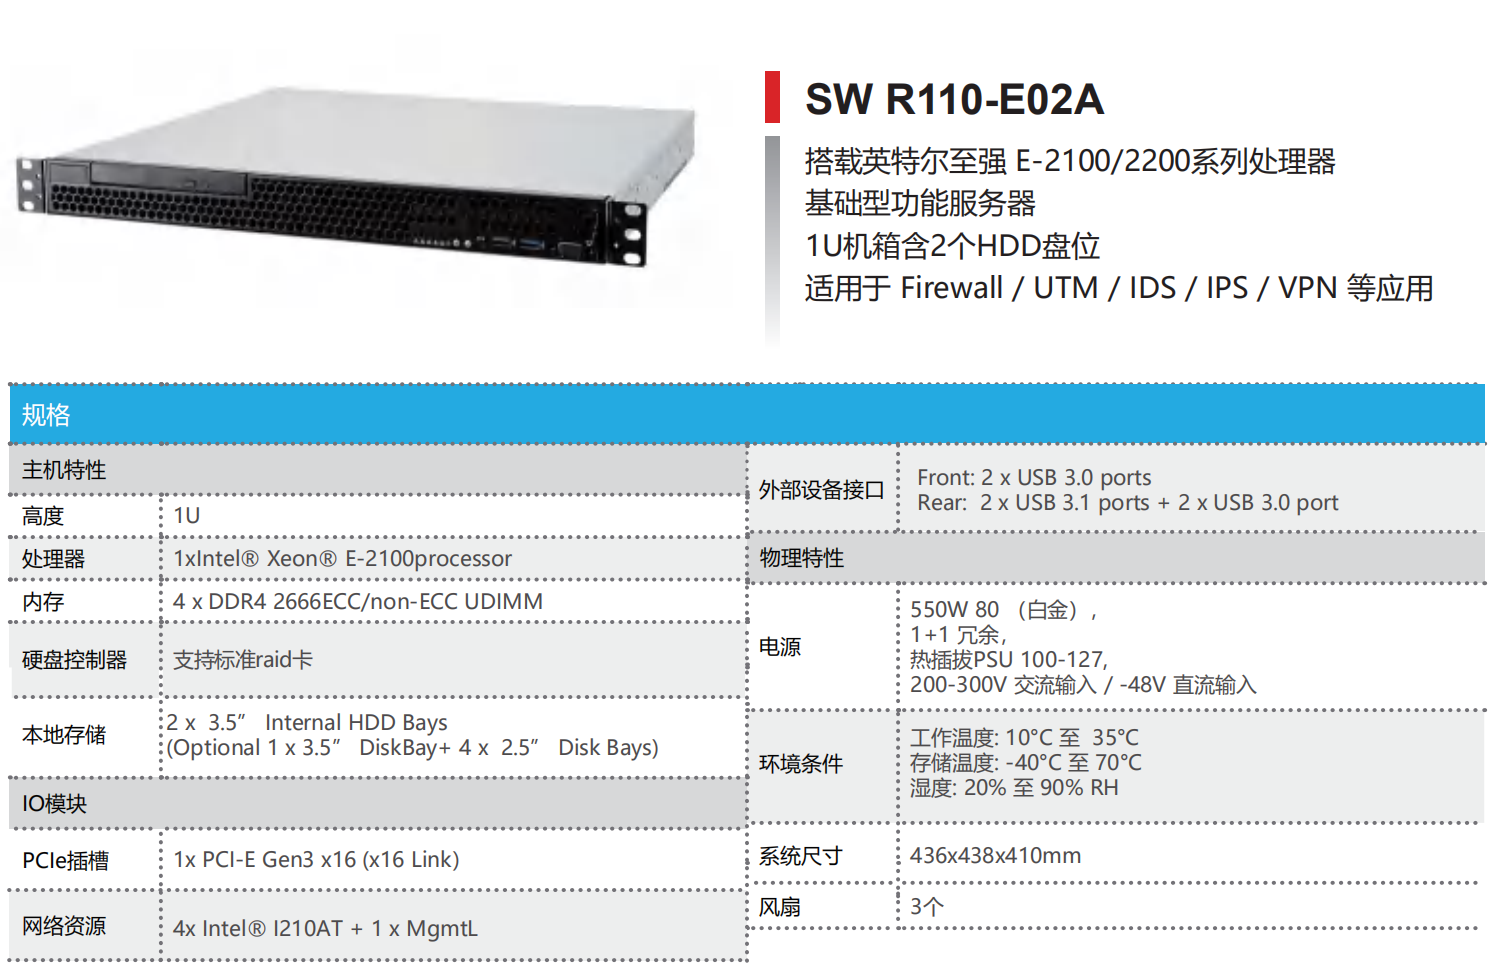 INTEL 平台单路服务器—SW R110-E02A